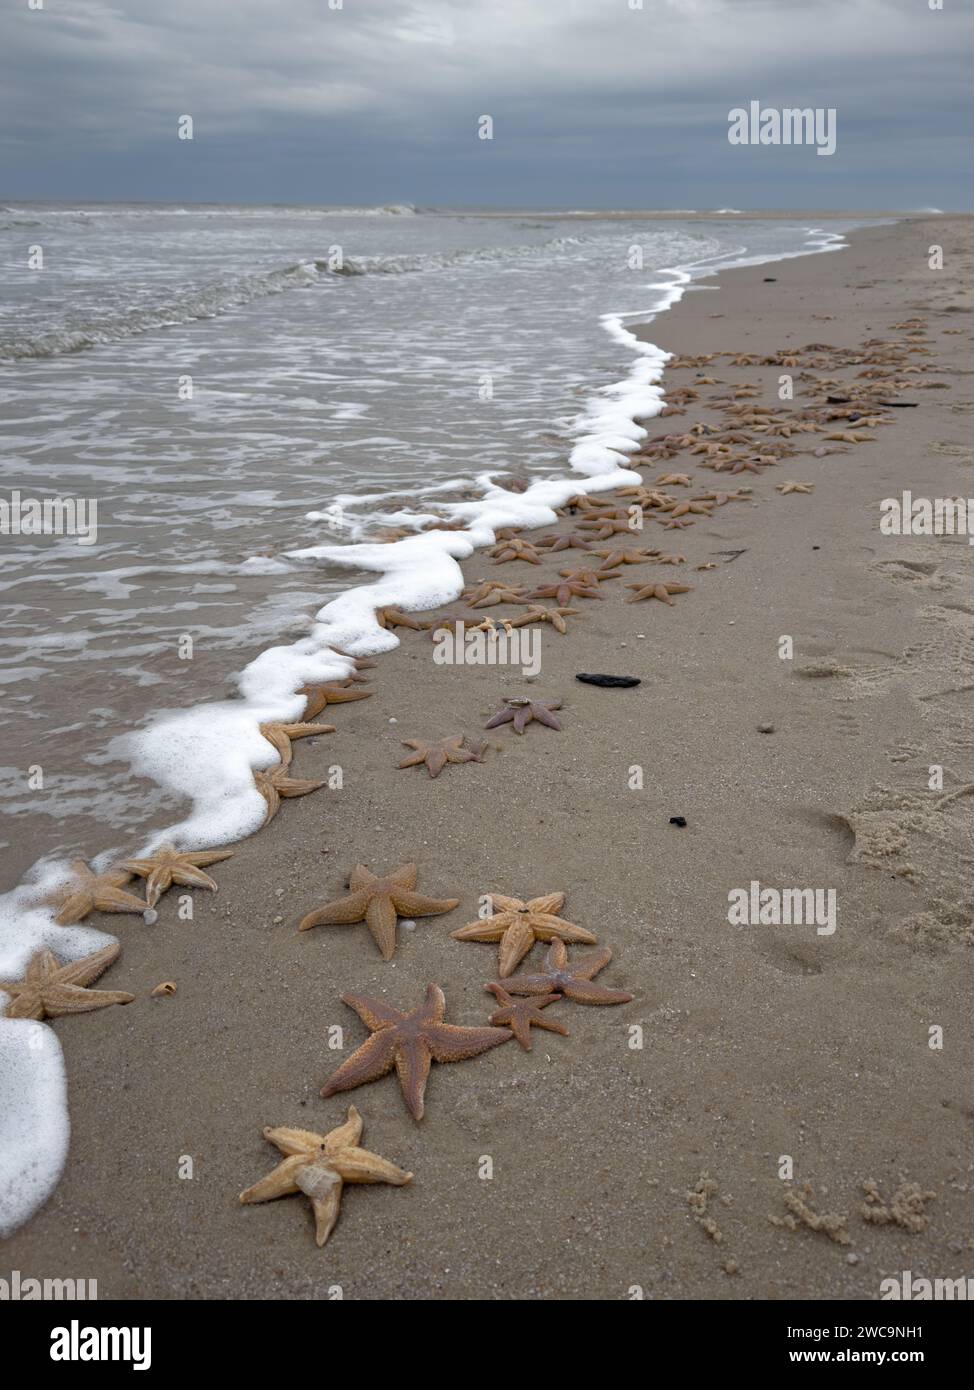 Eine Fülle von lebhaften Seesternen verstreut über den Sandstrand, die einen herrlichen Anblick vor der Kulisse des glitzernden Meerwassers schaffen Stockfoto